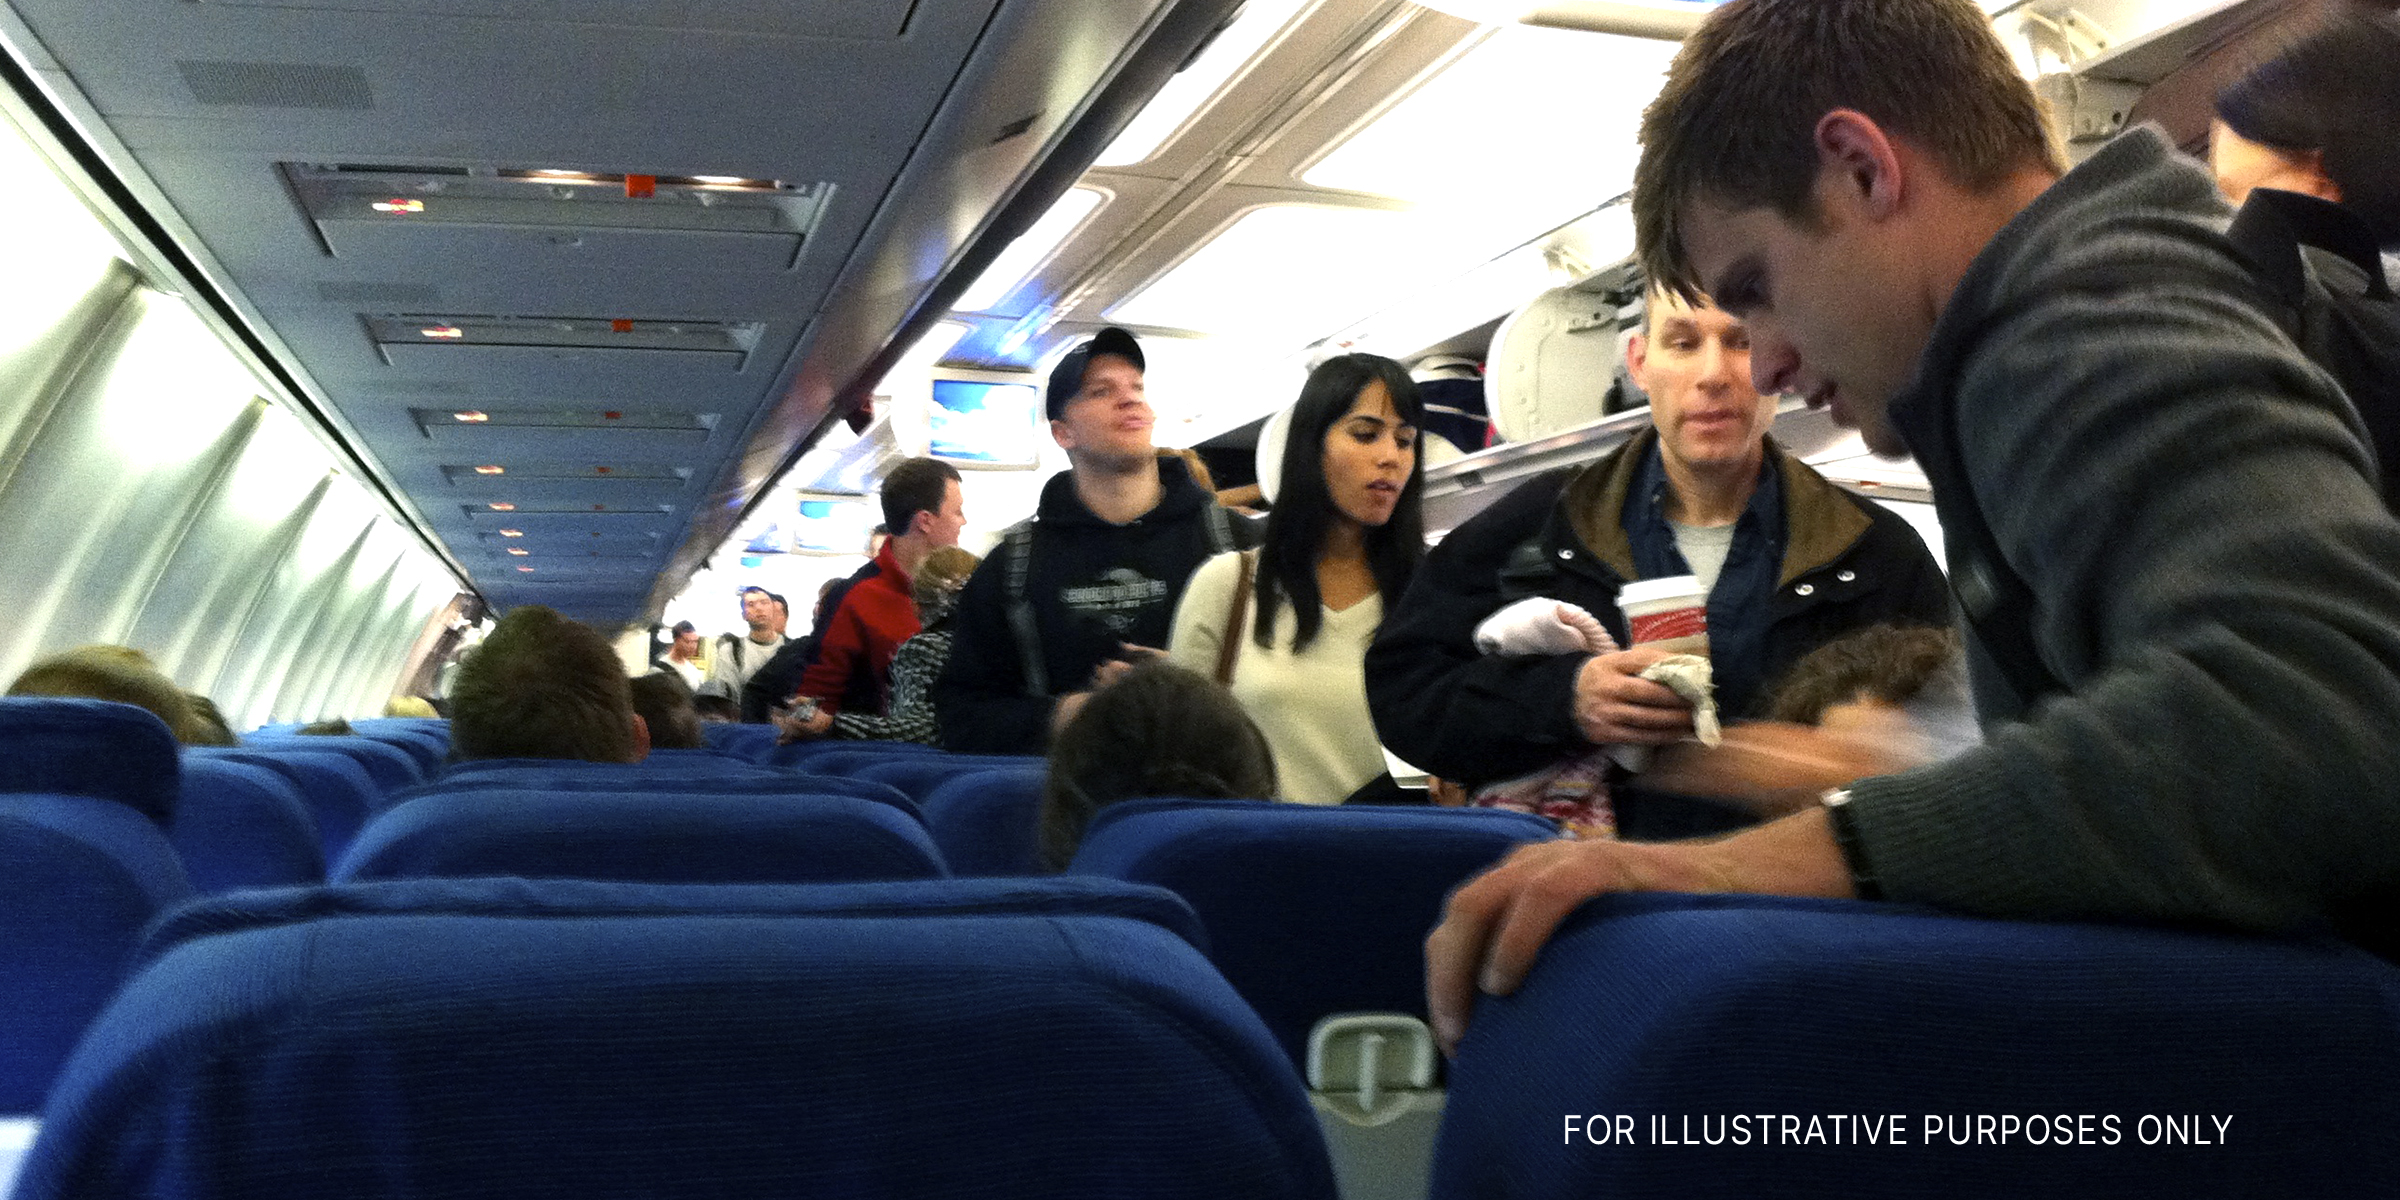 Passengers inside an aircraft | Source: flickr.com/CC BY-SA 2.0/MattHurst